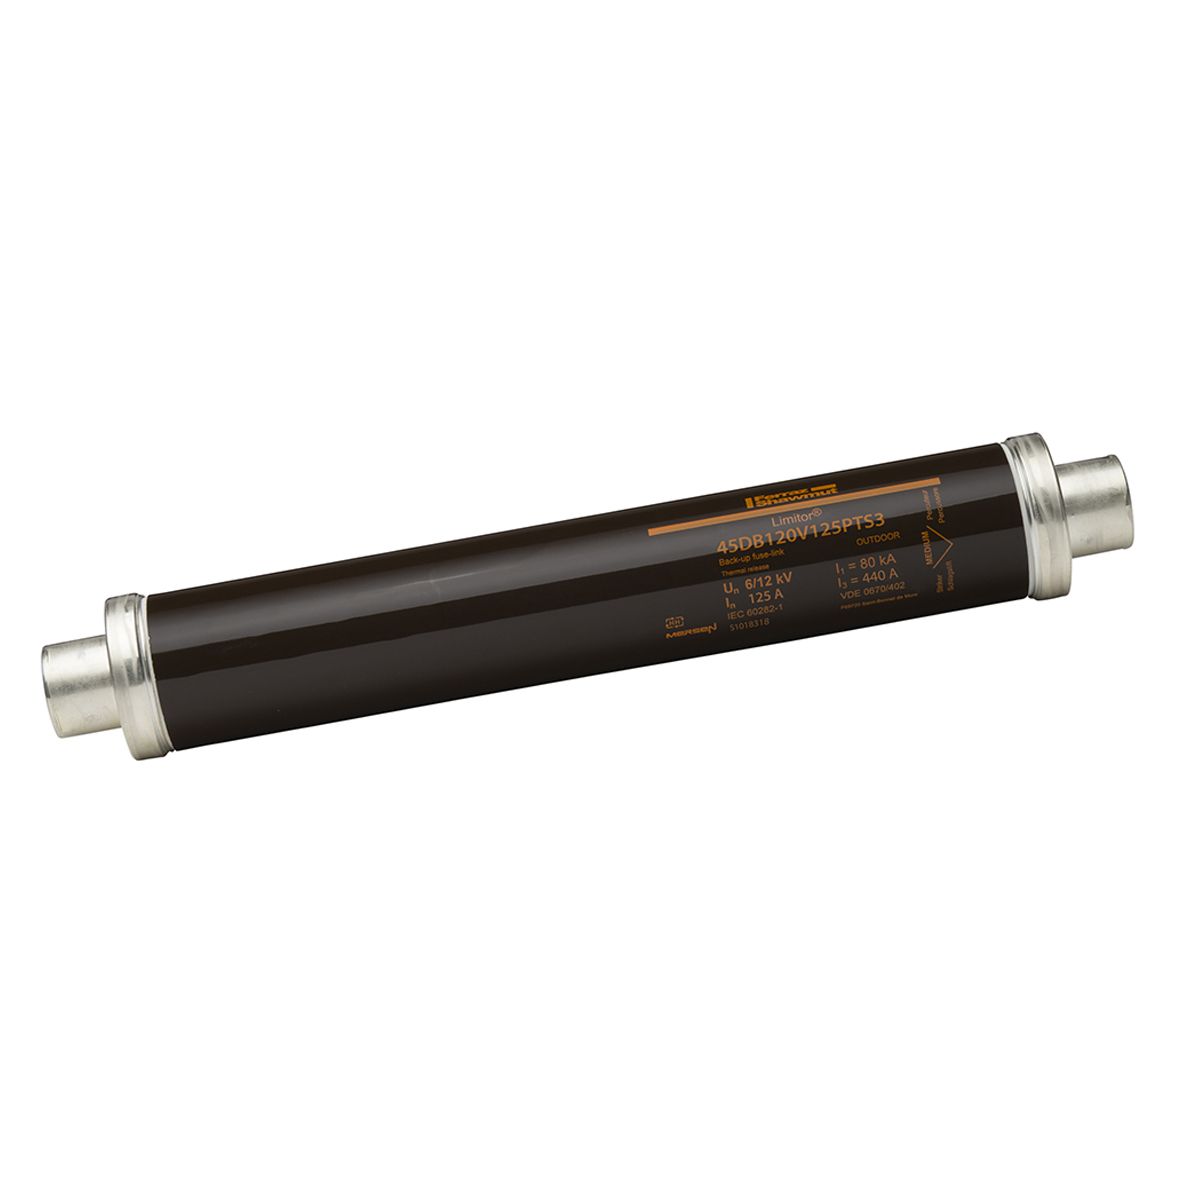 S1018318 - HV fuse DIN 43625, 12kV, 125A, 442mm, 45mm, thermal striker